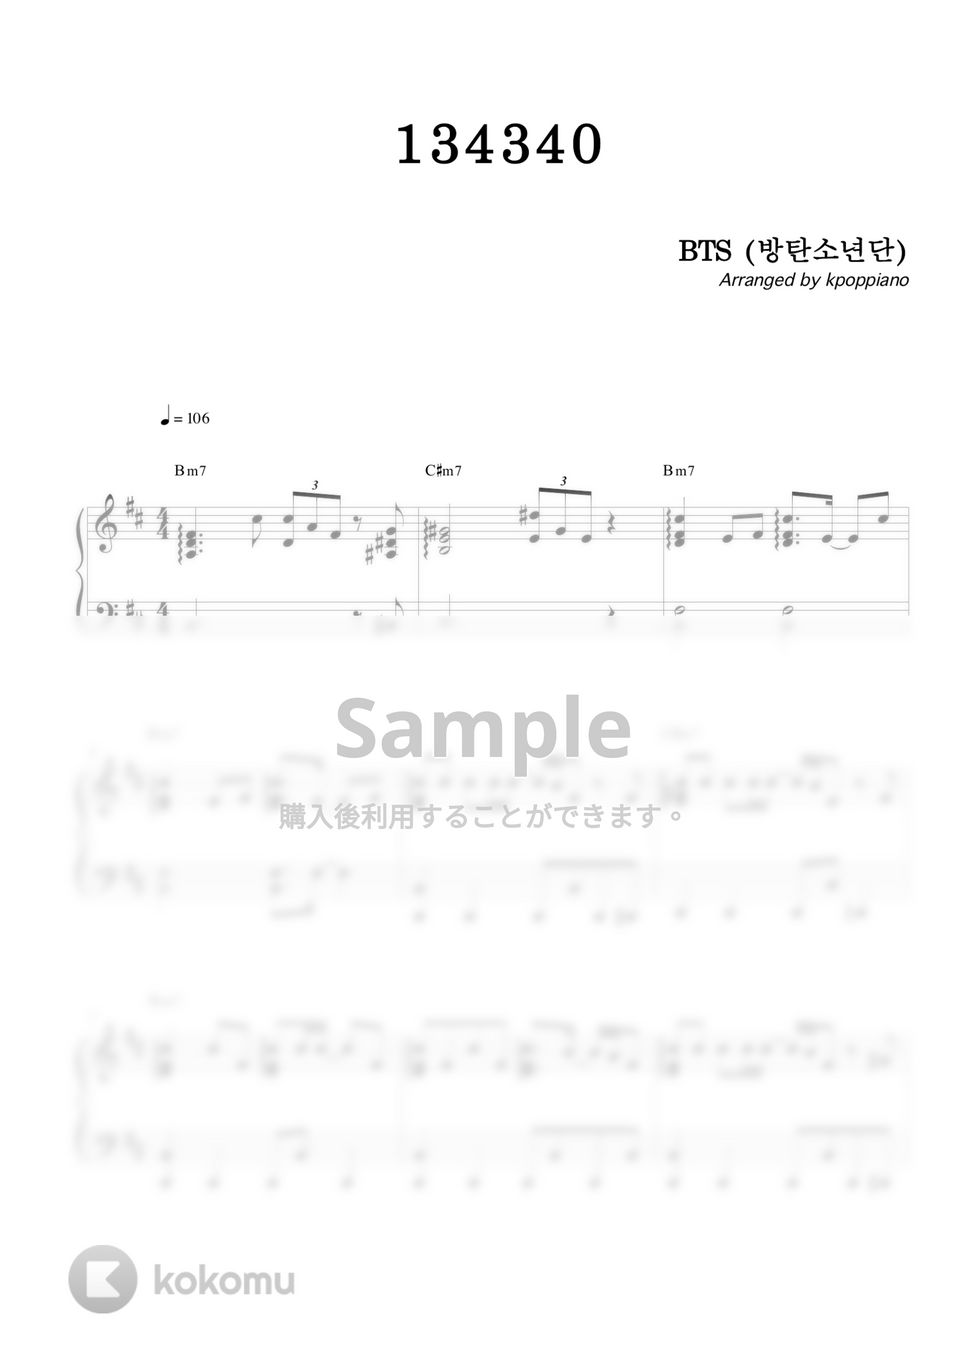 防弾少年団 (BTS) - 134340 by KPOP PIANO